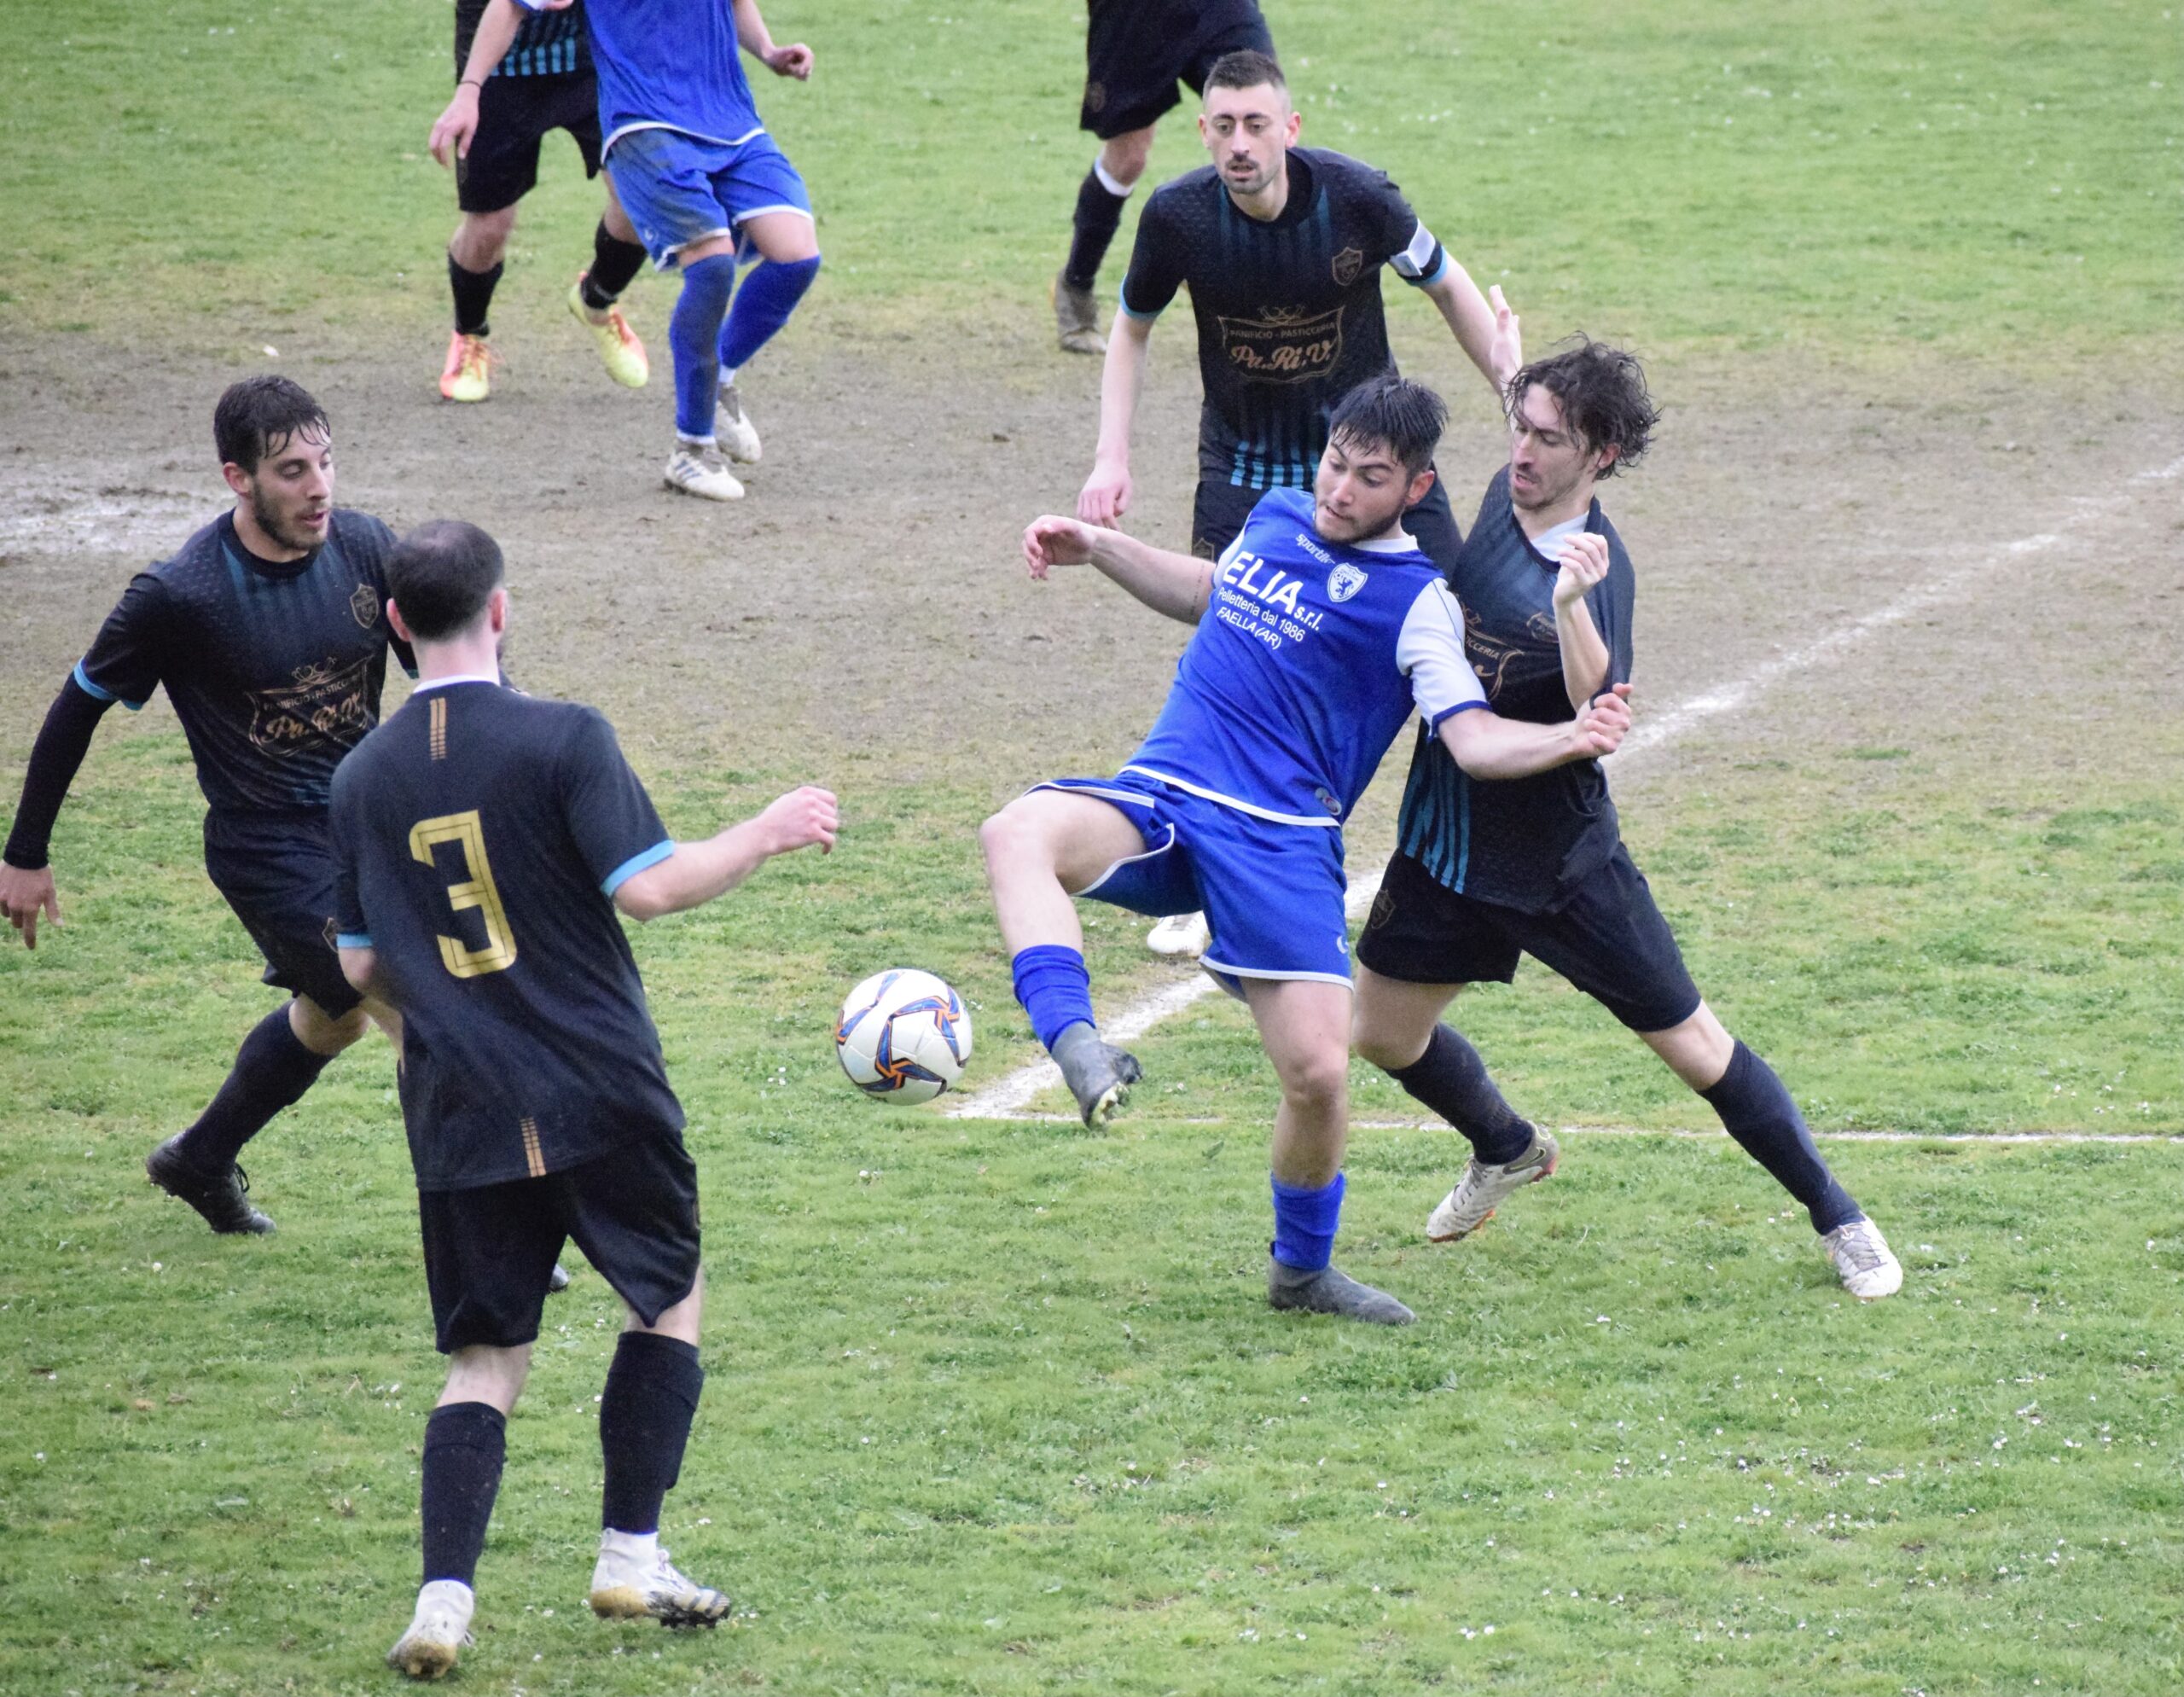 Guazzino vs Faellese: 2 – 0